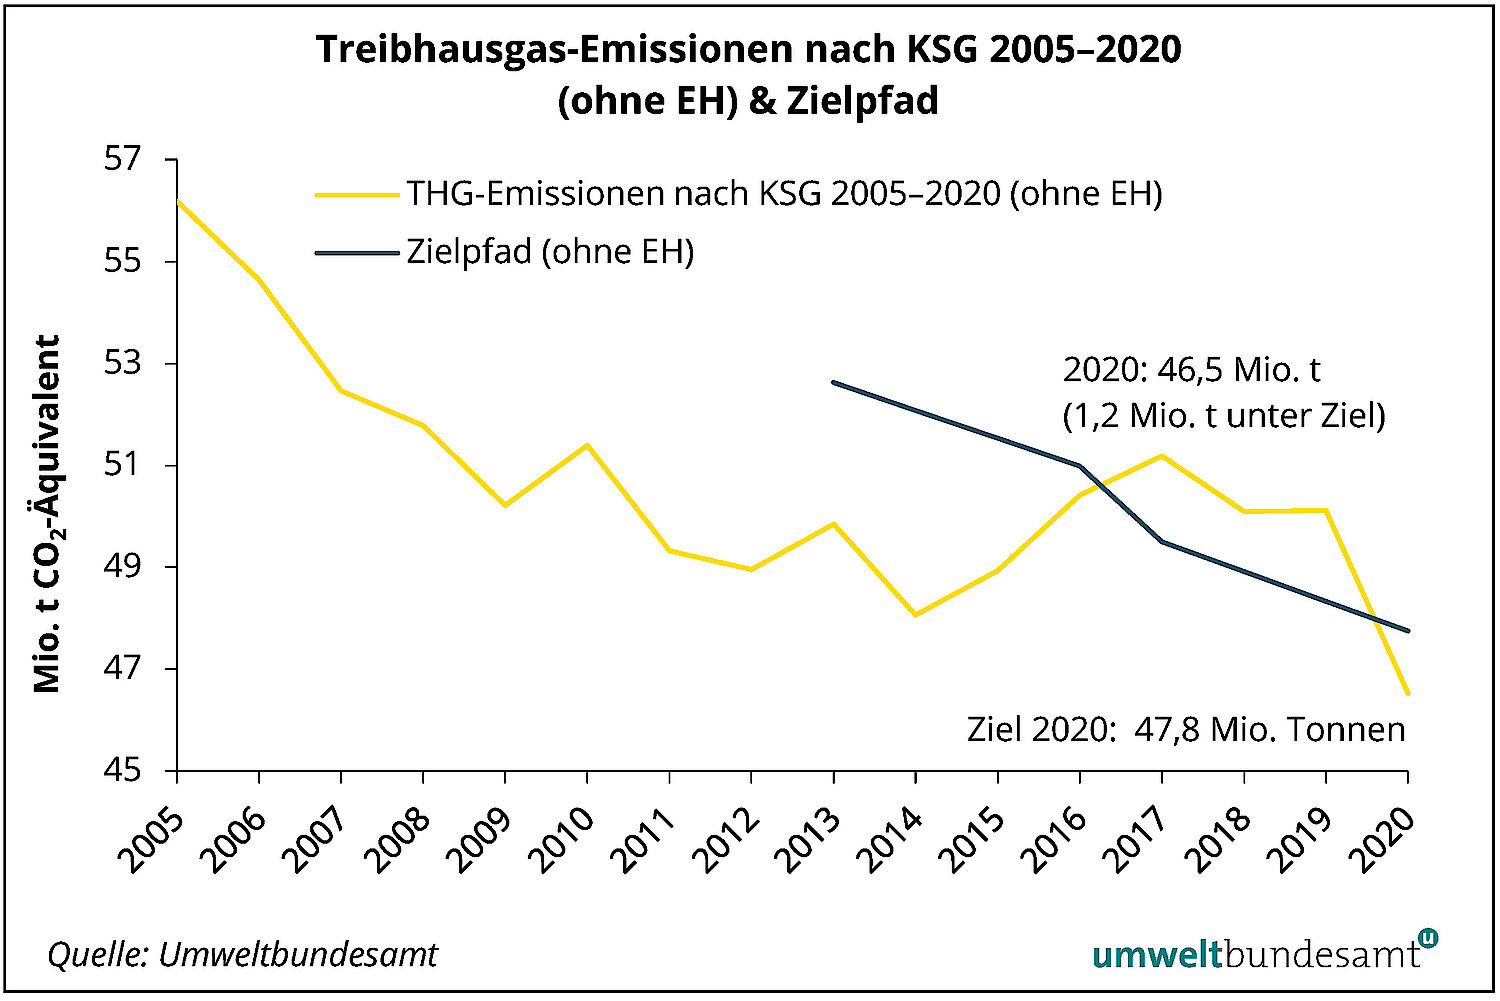 Die THG Emissionen nach KSG lagen für 2020 ohne Emissionshandel bei 1,2 Millionen Tonnen unter dem Zielwert.